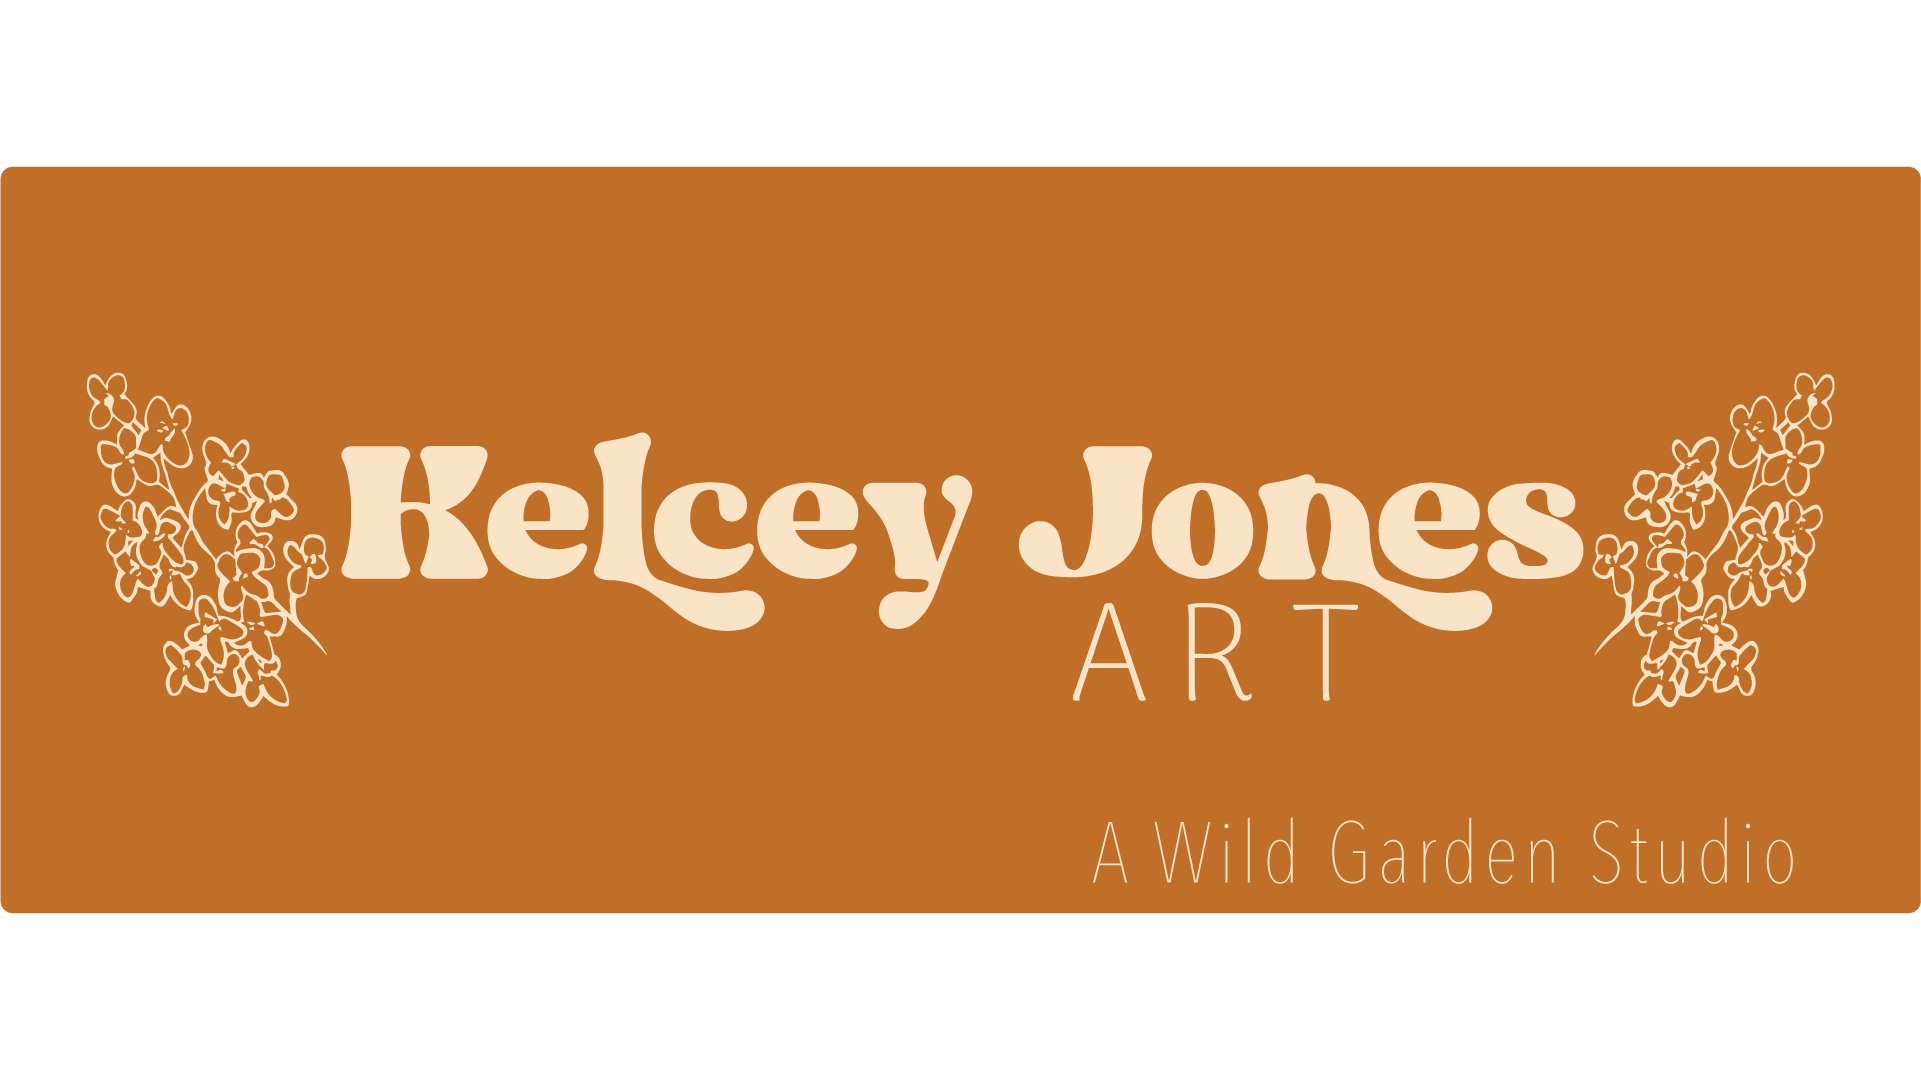 About – Kelcey Jones Art